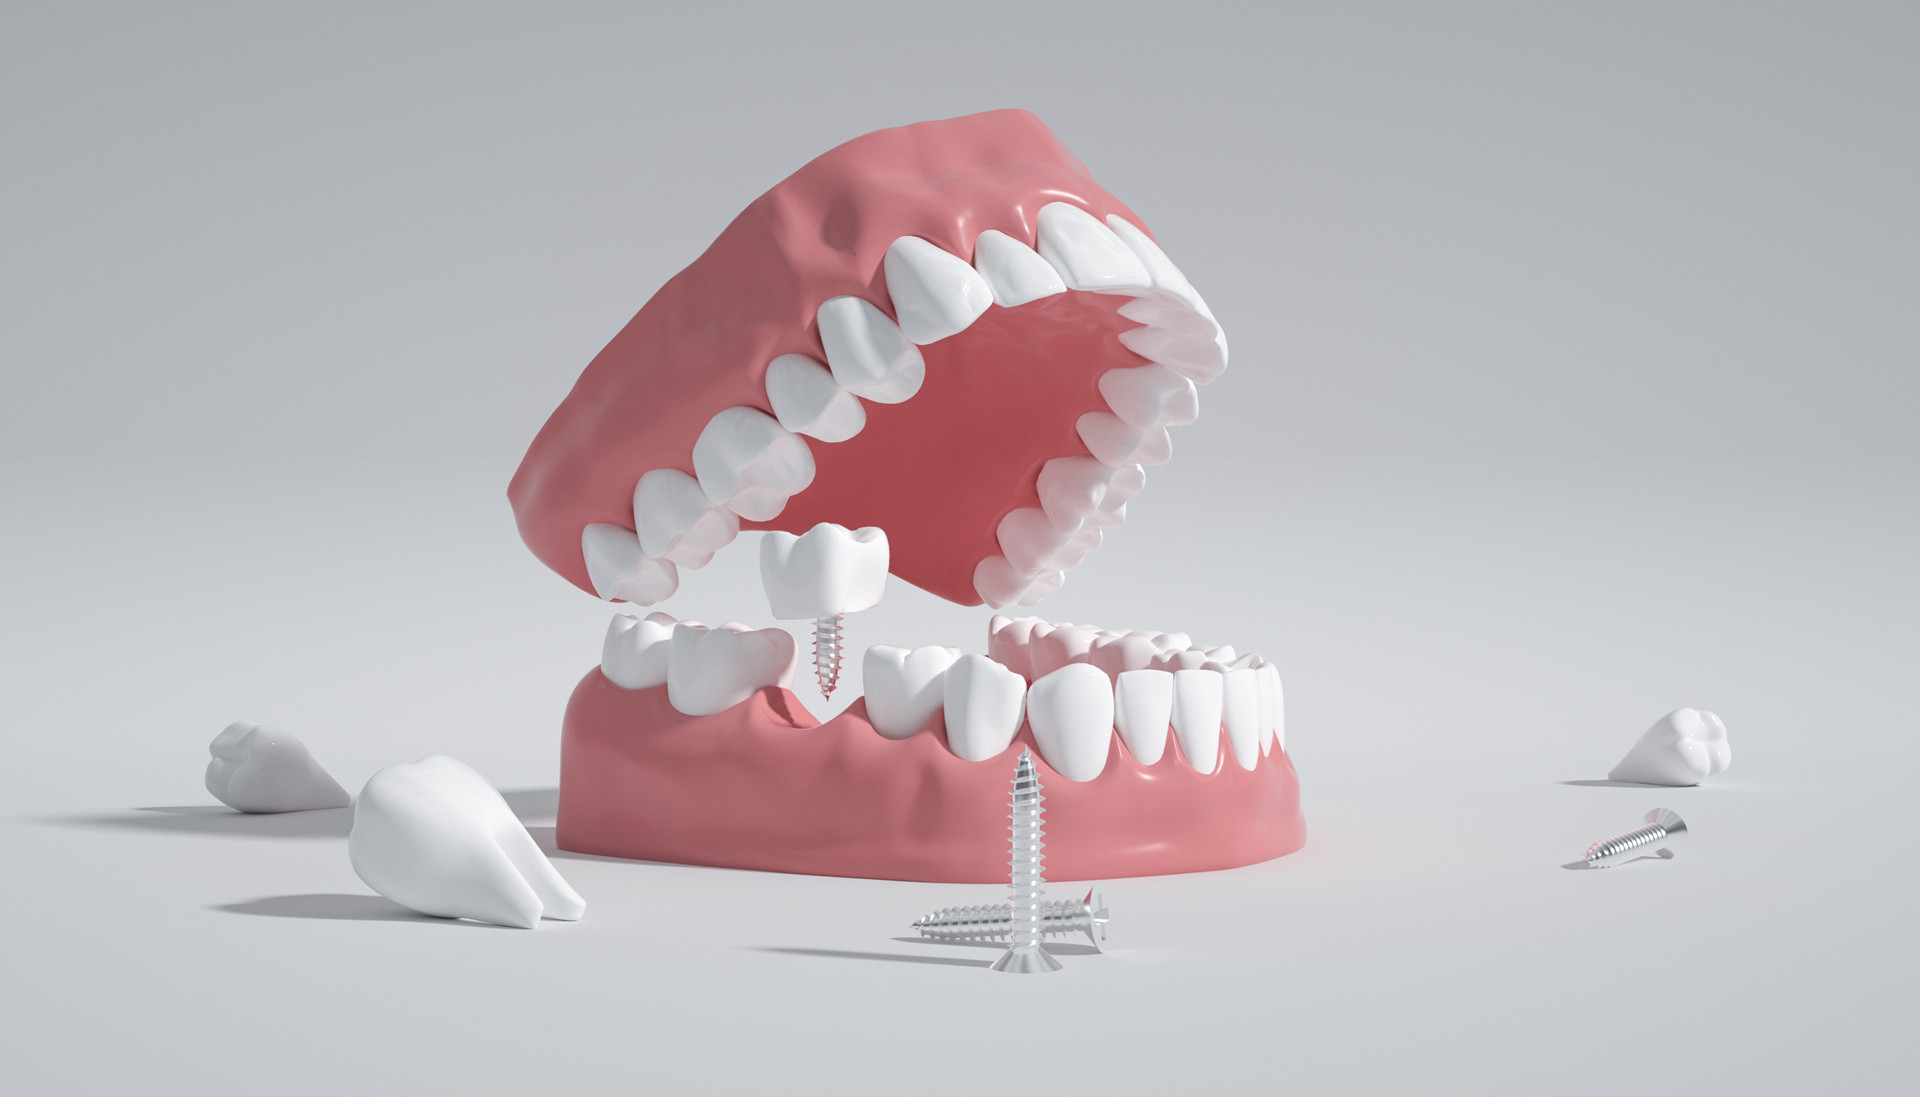 Clin Oral Investig：牙齿蛀掉了，纳米<font color="red">羟基</font><font color="red">磷灰石</font>能恢复吗？